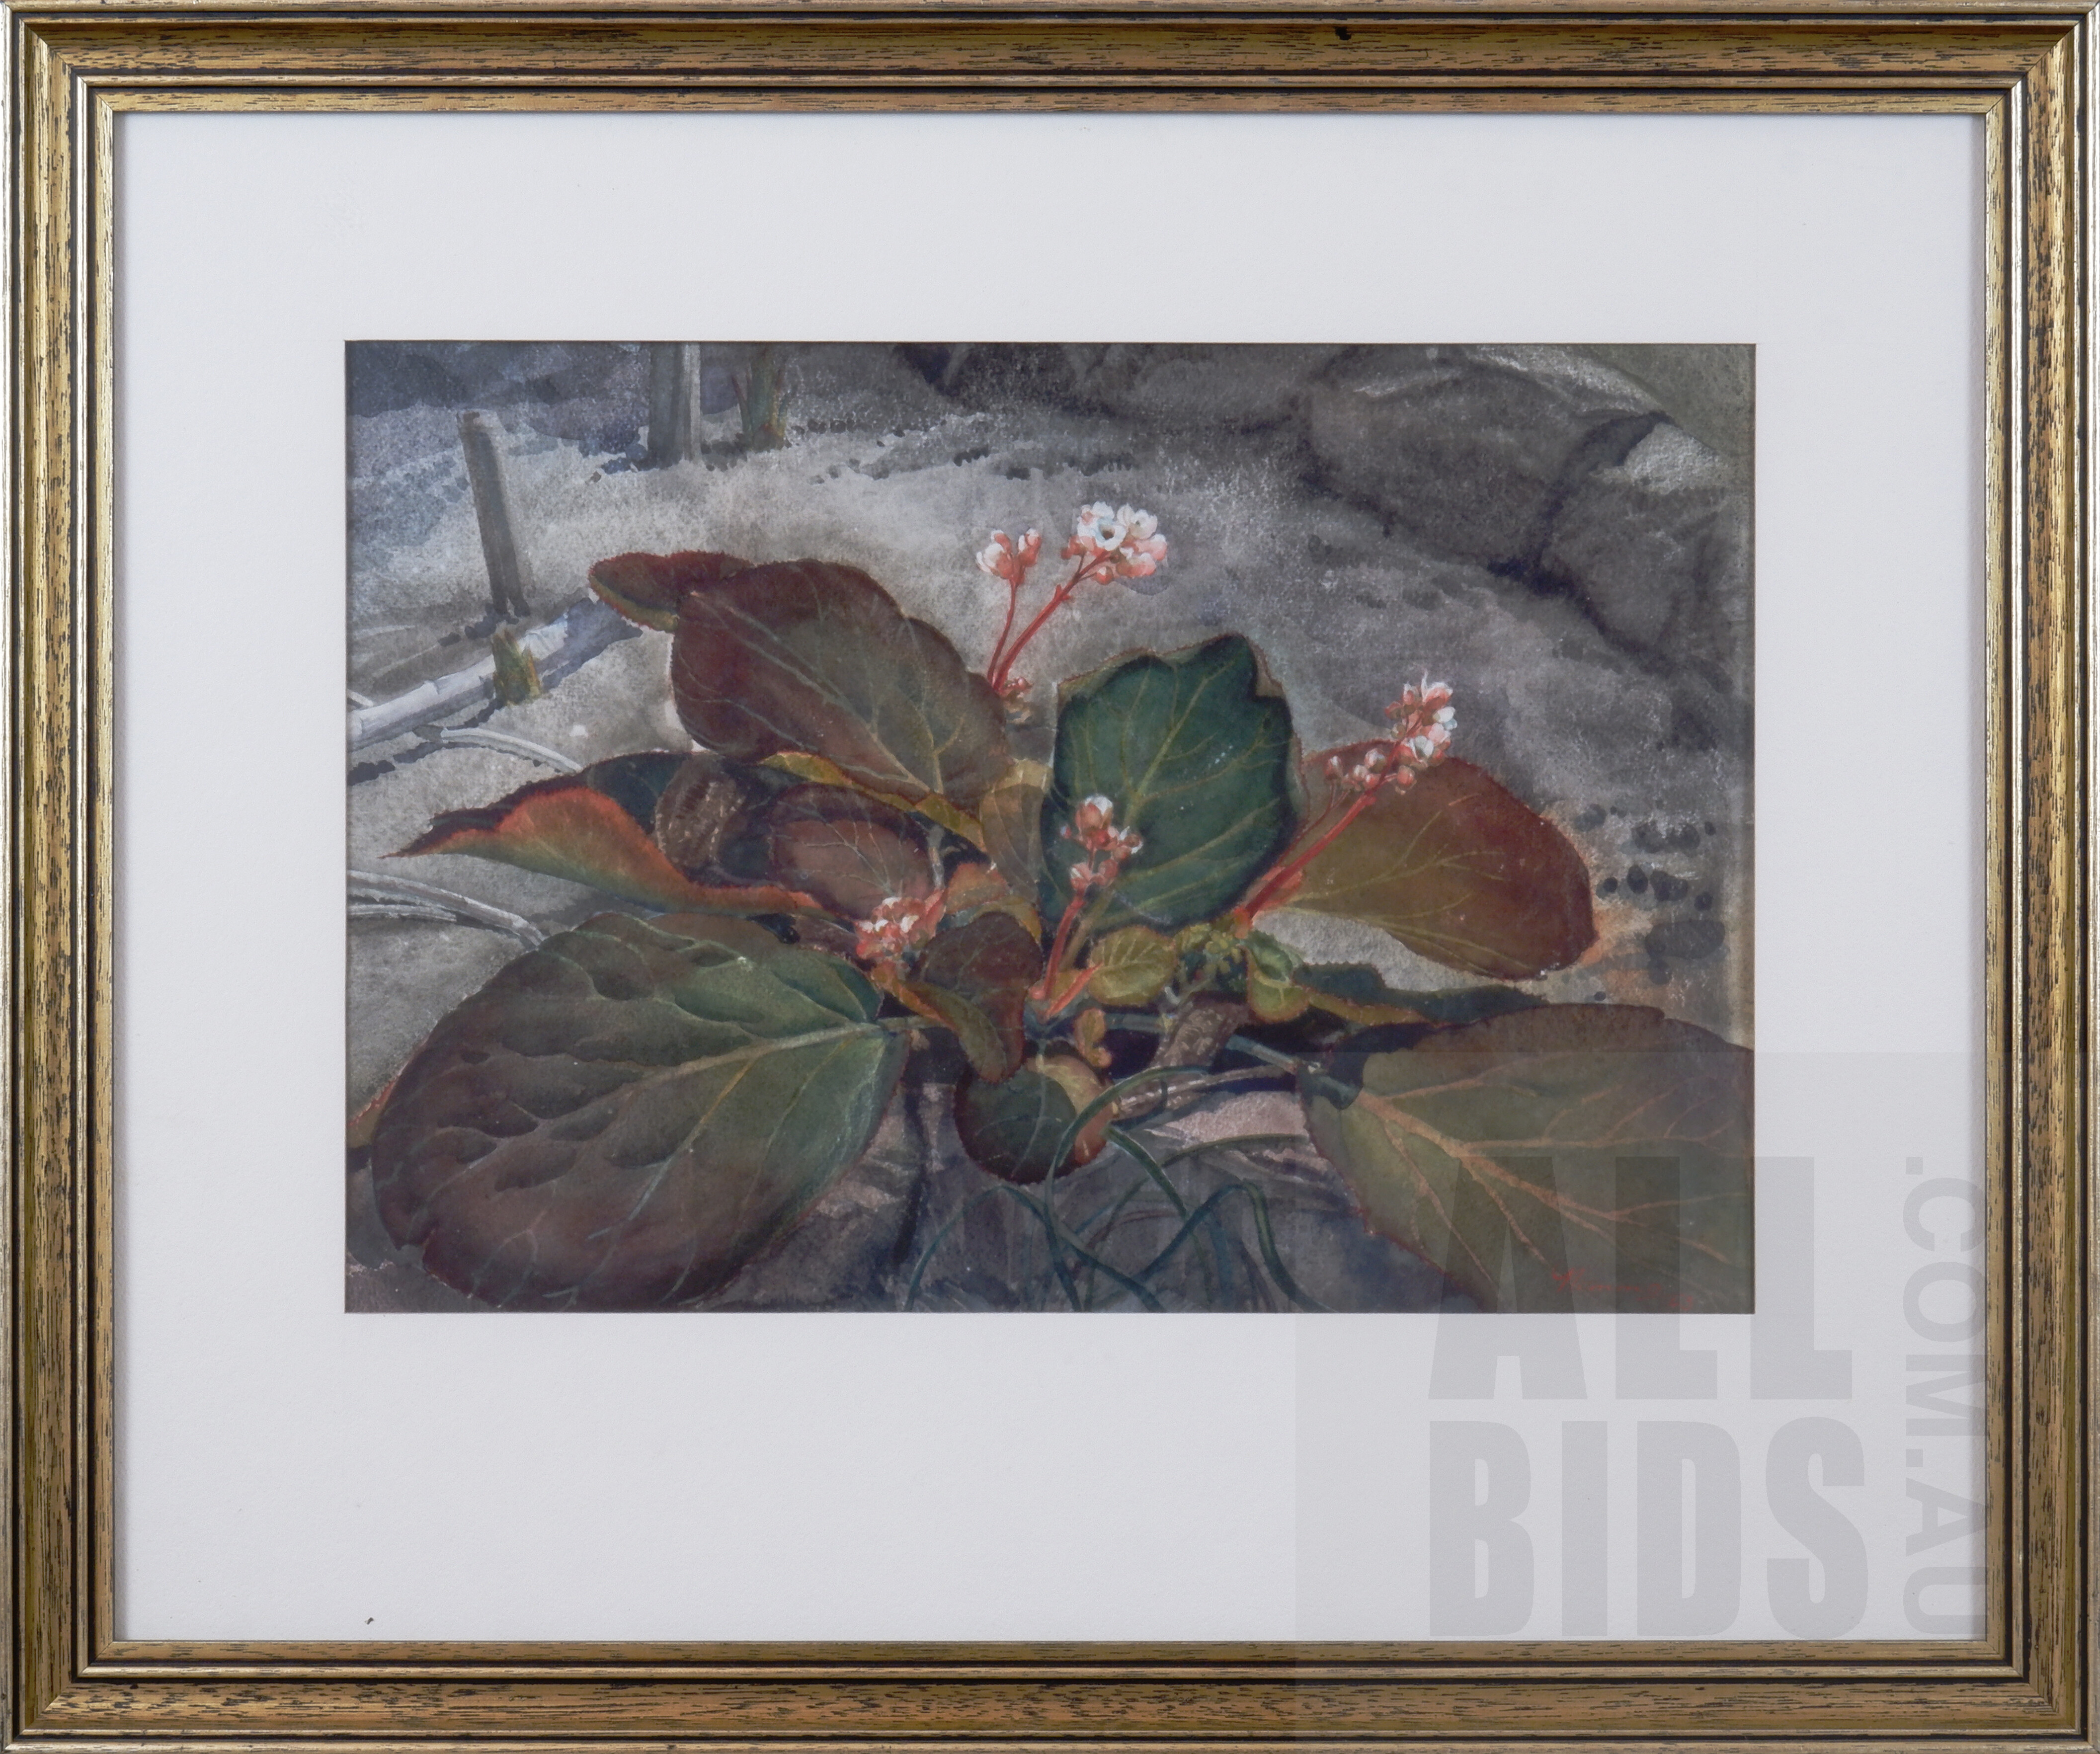 'Lorna Nimmo (born 1923), Untitled (Garden Landscape) 1943, Watercolour, 25 x 36 cm'